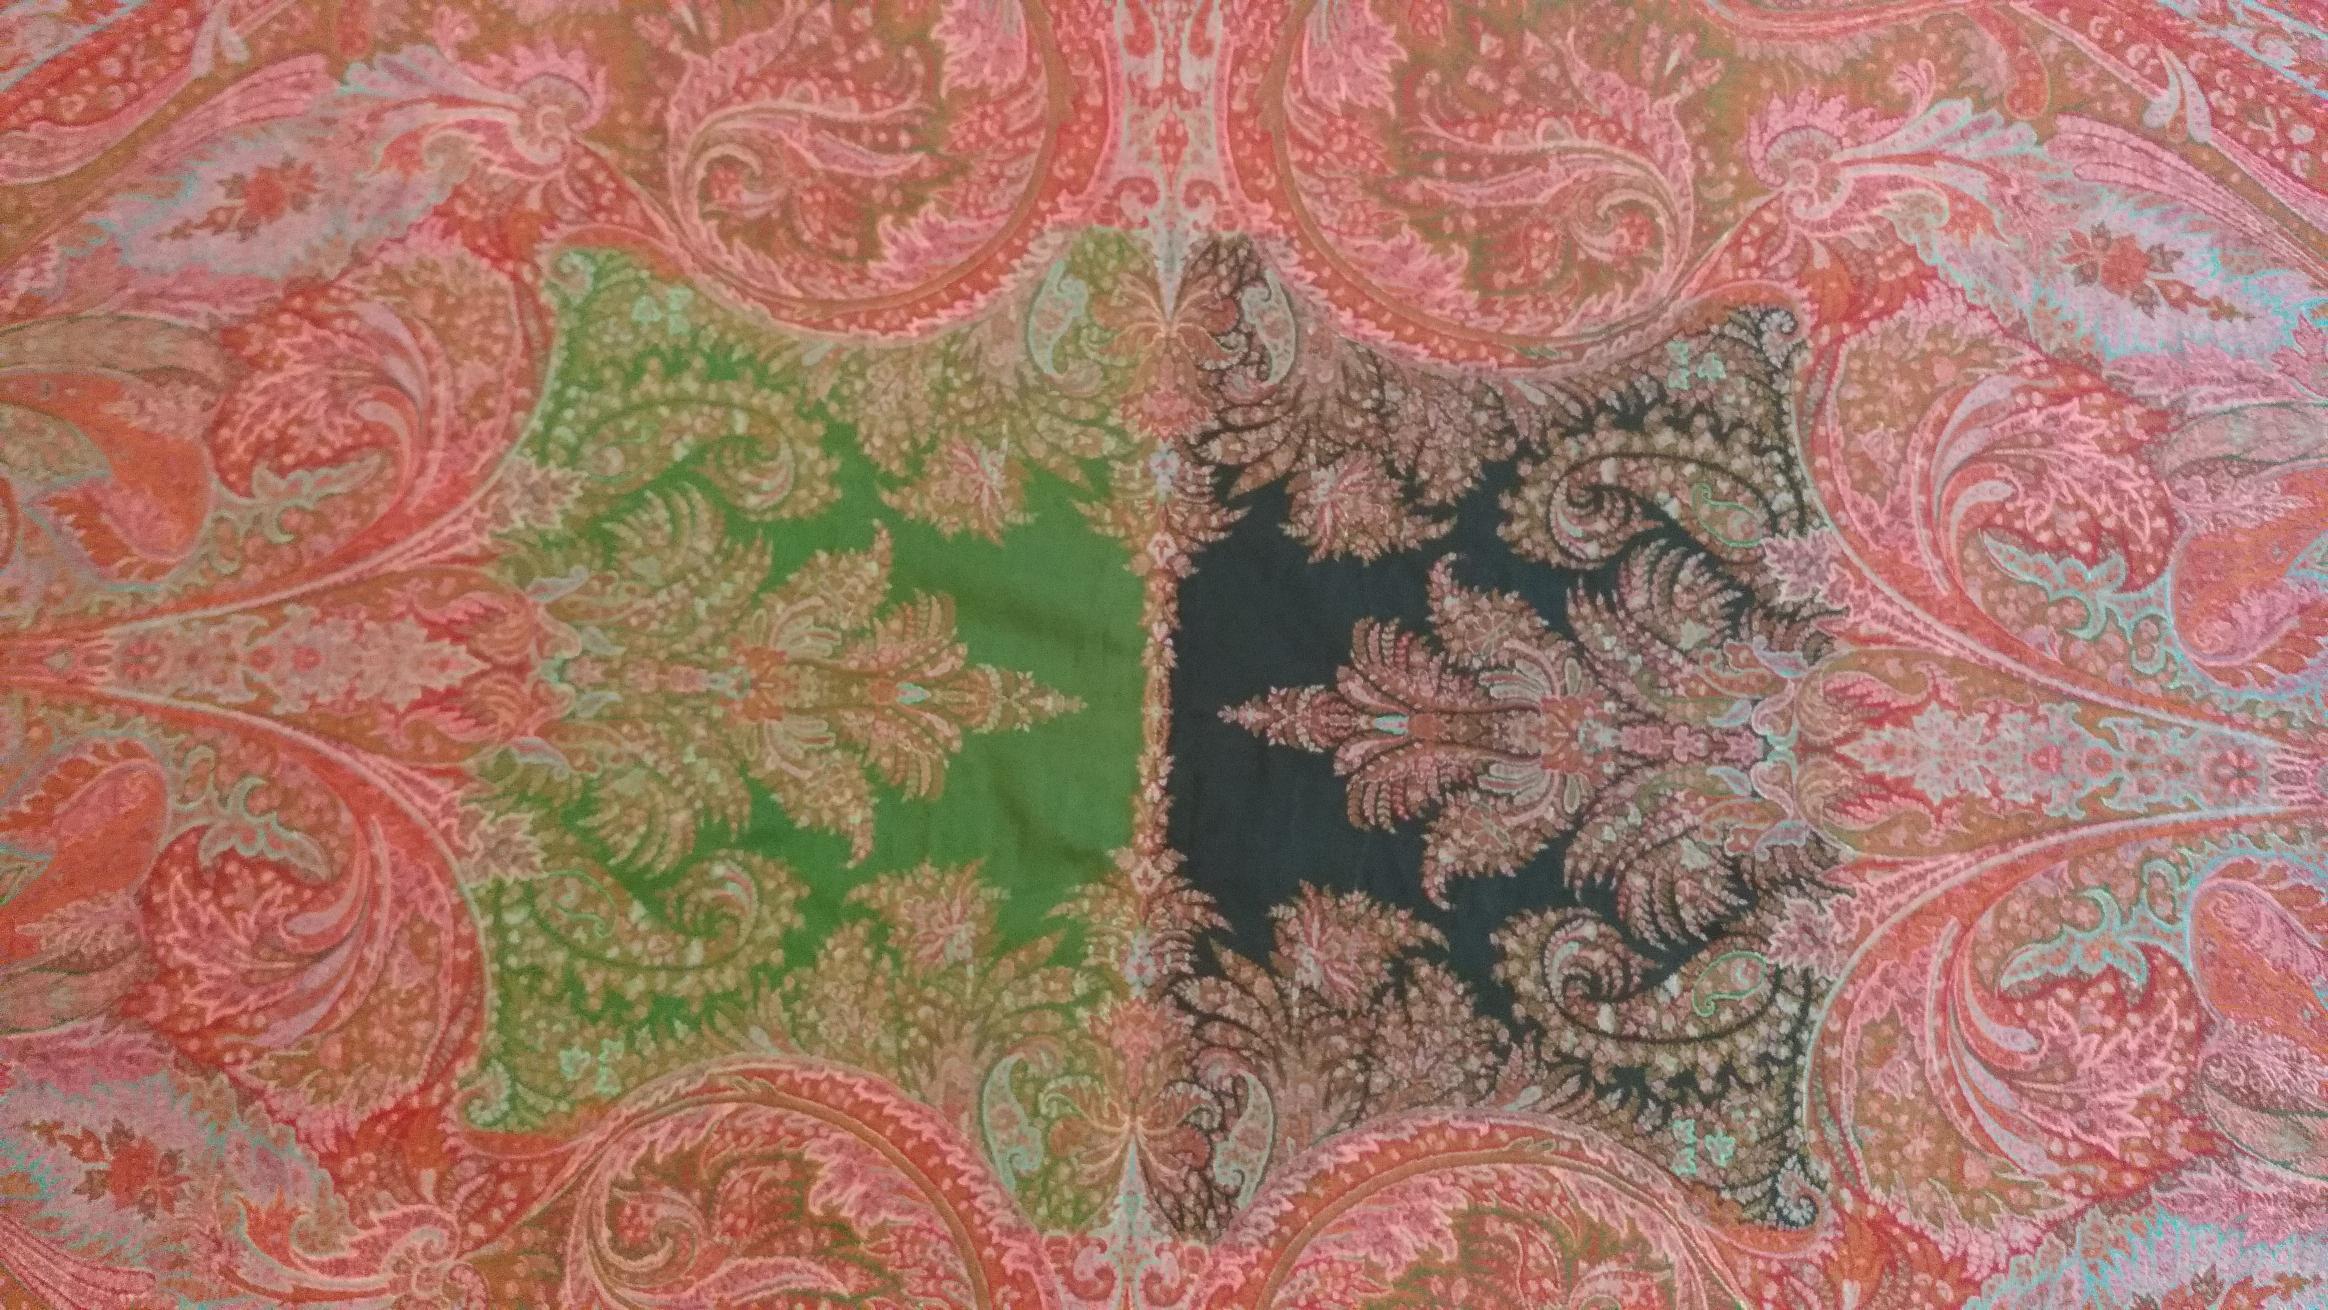 kaschmirschal aus dem 19. Jahrhundert, hergestellt in Lyon in Frankreich in der Mitte des 19. Jahrhunderts mit sehr schönen Farben.